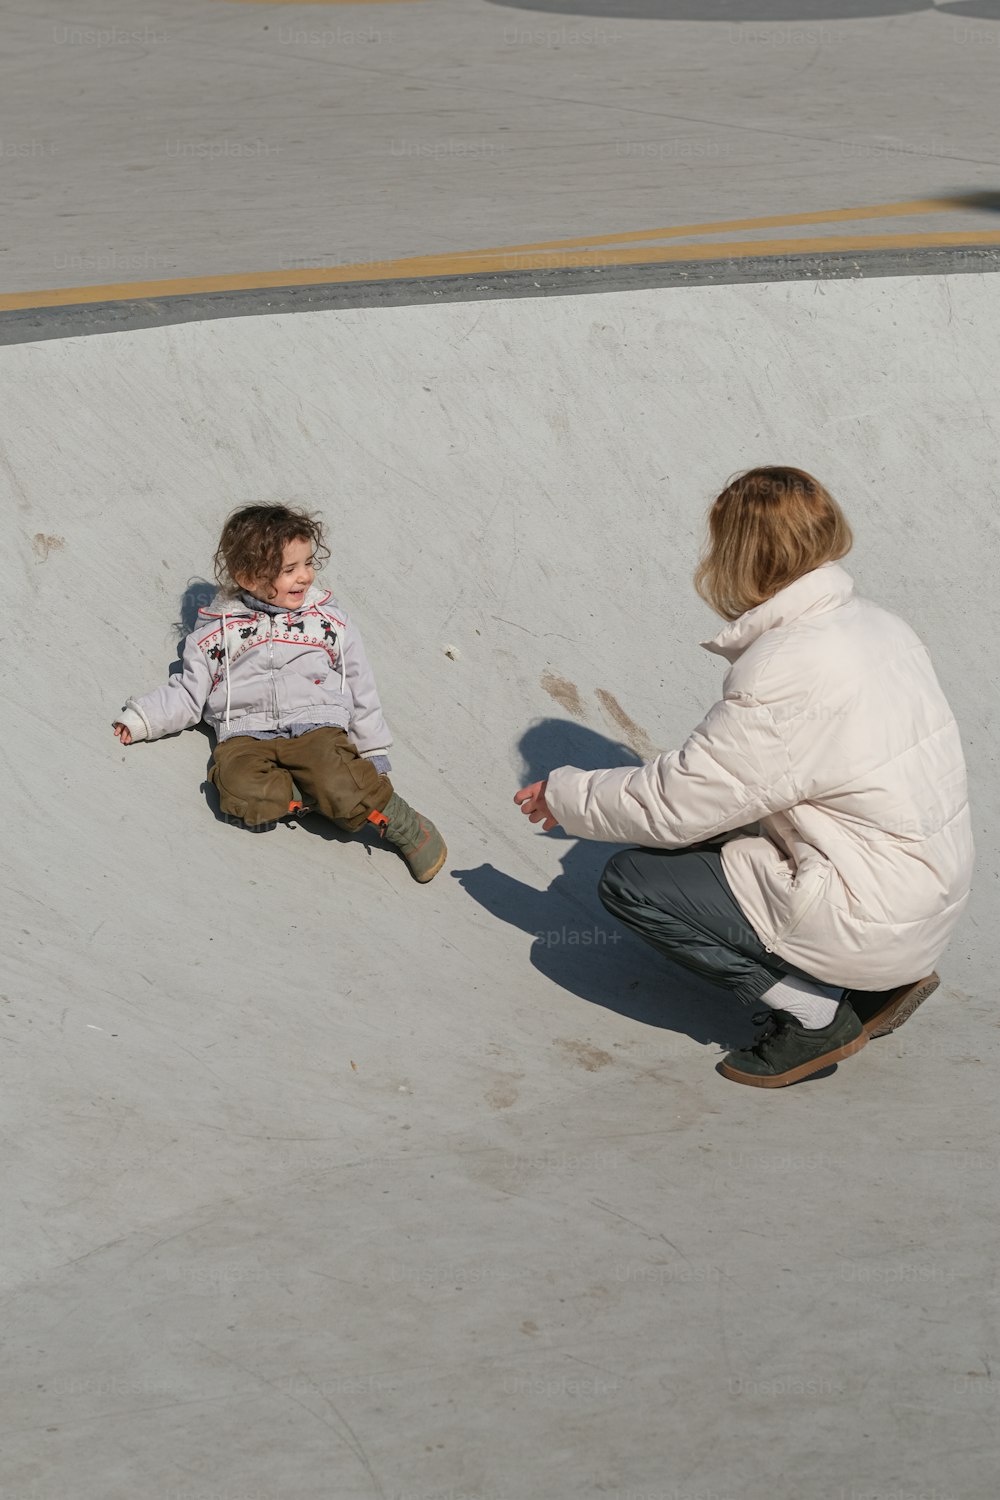 Una donna inginocchiata accanto a un bambino su uno skateboard